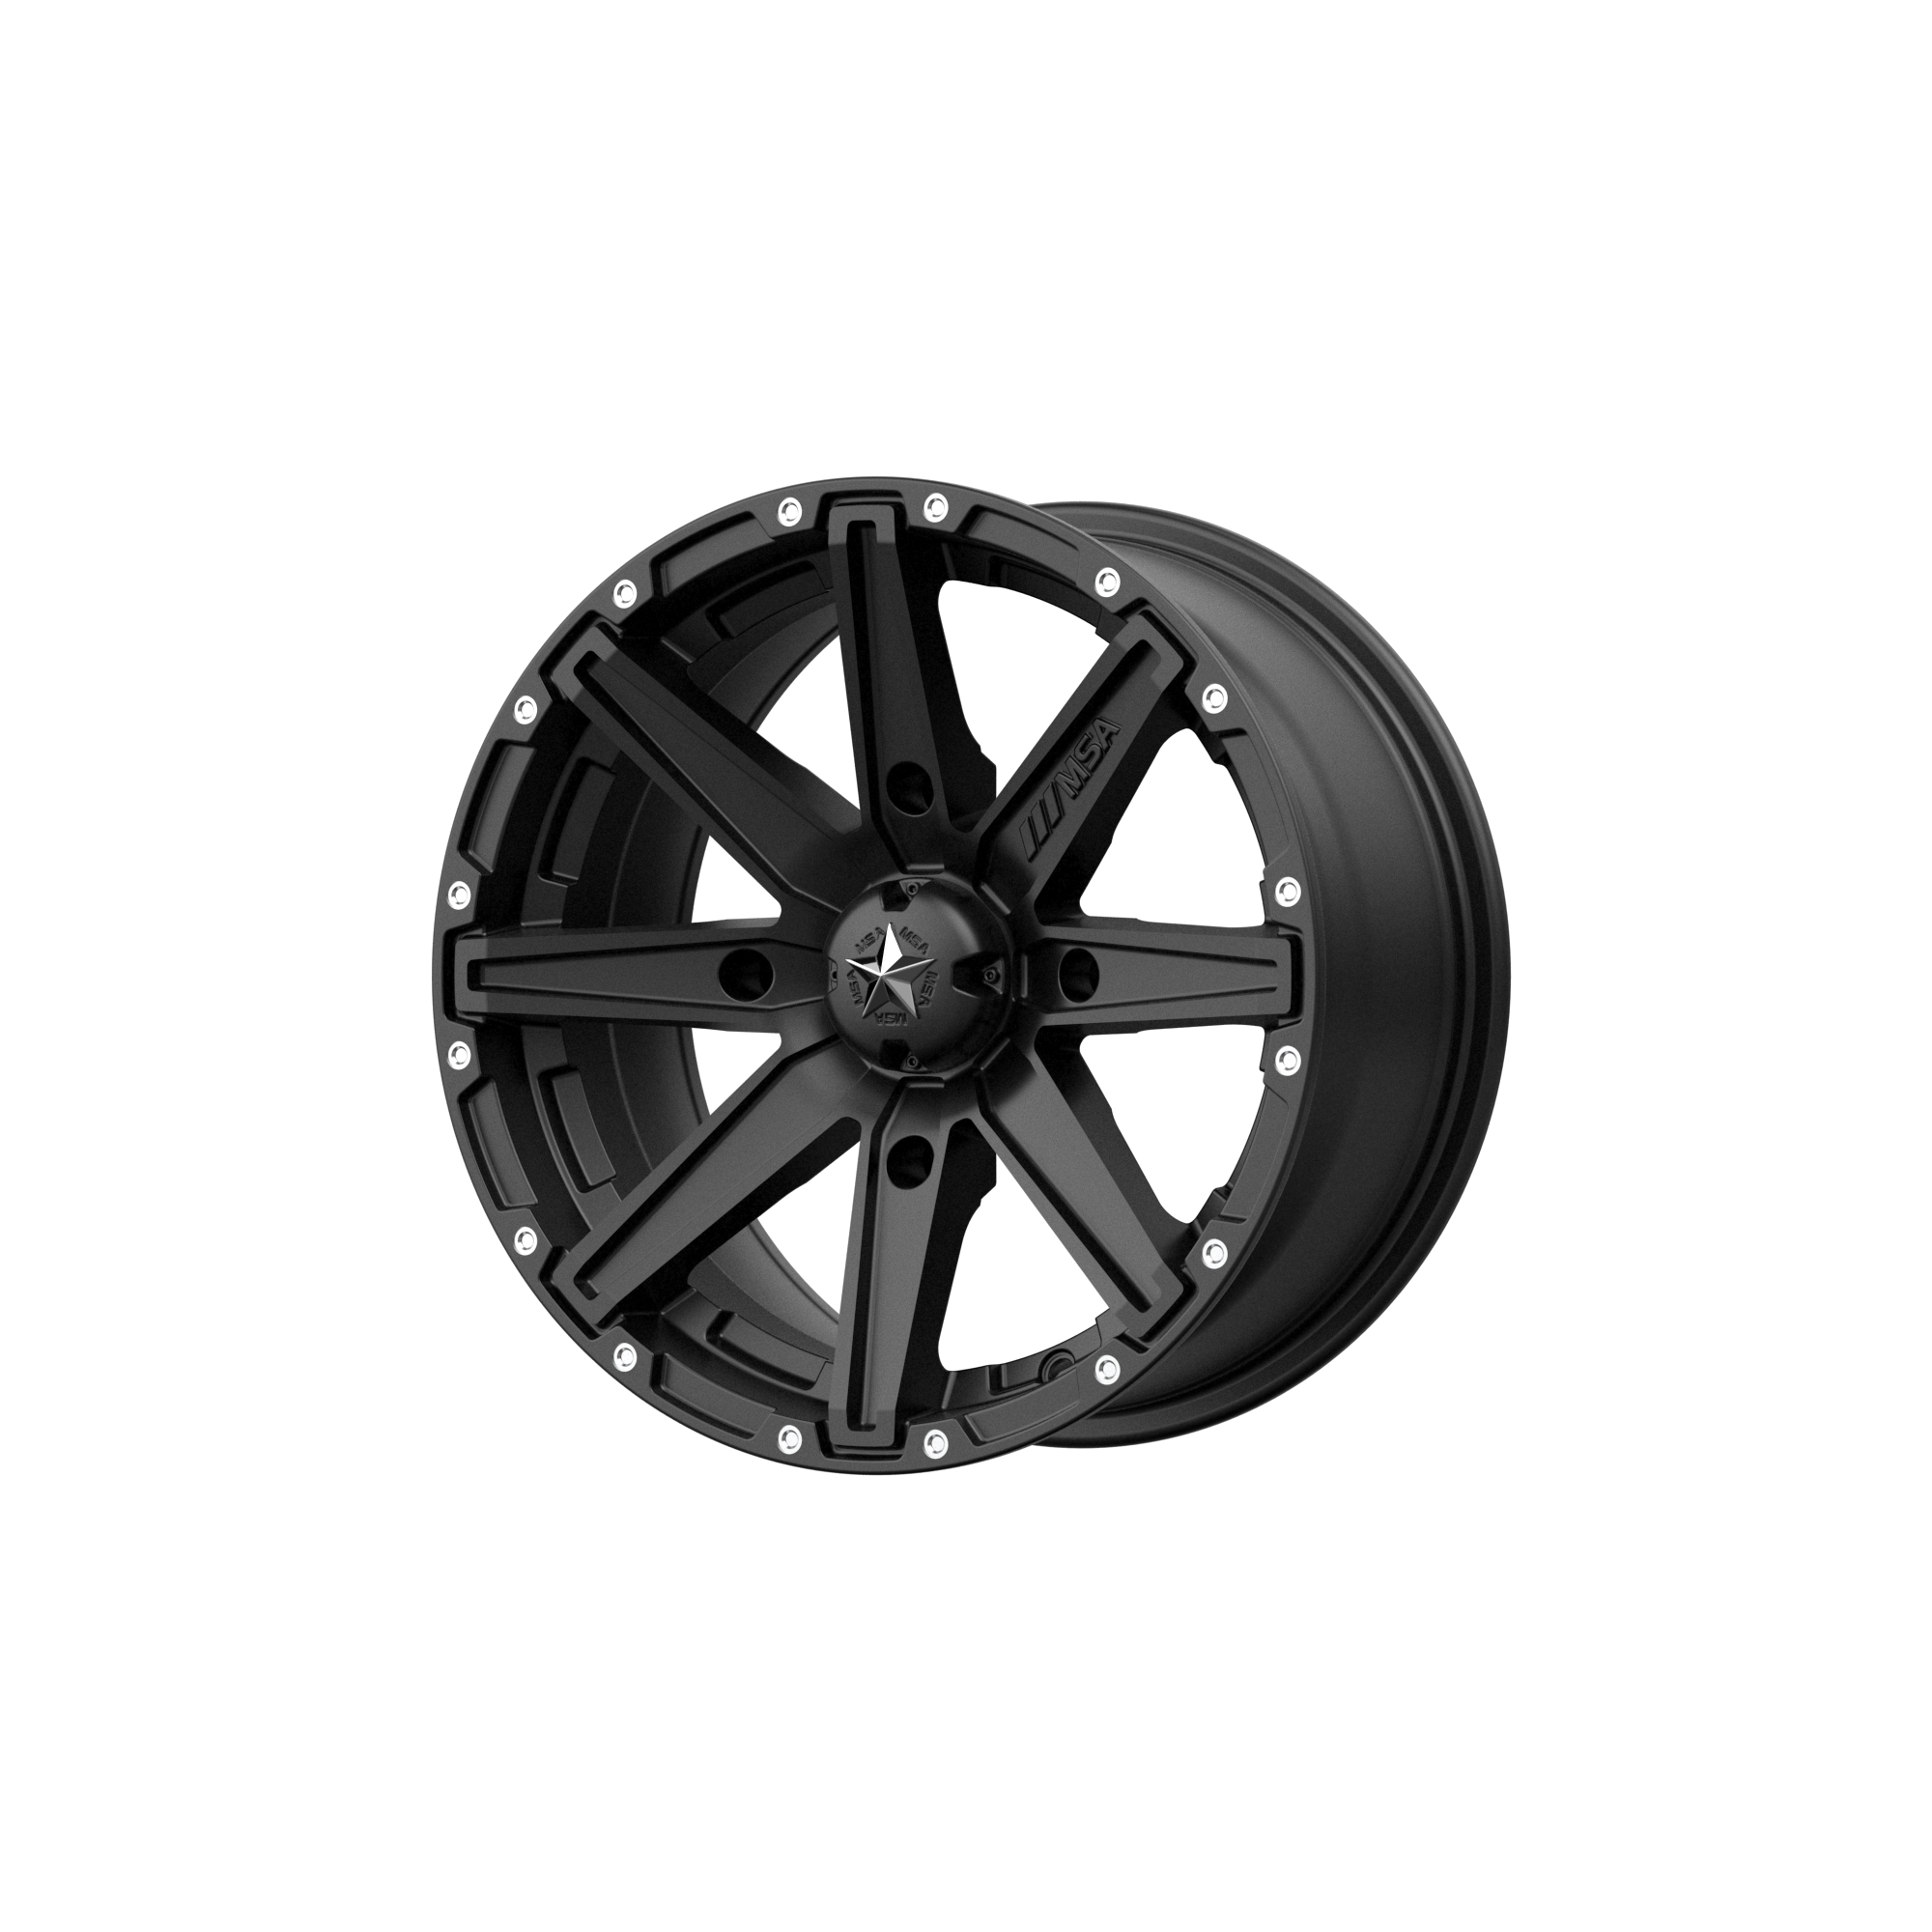 MSA Offroad Wheels M33 CLUTCH 15x10 0 4x110/4x110 Satin Black